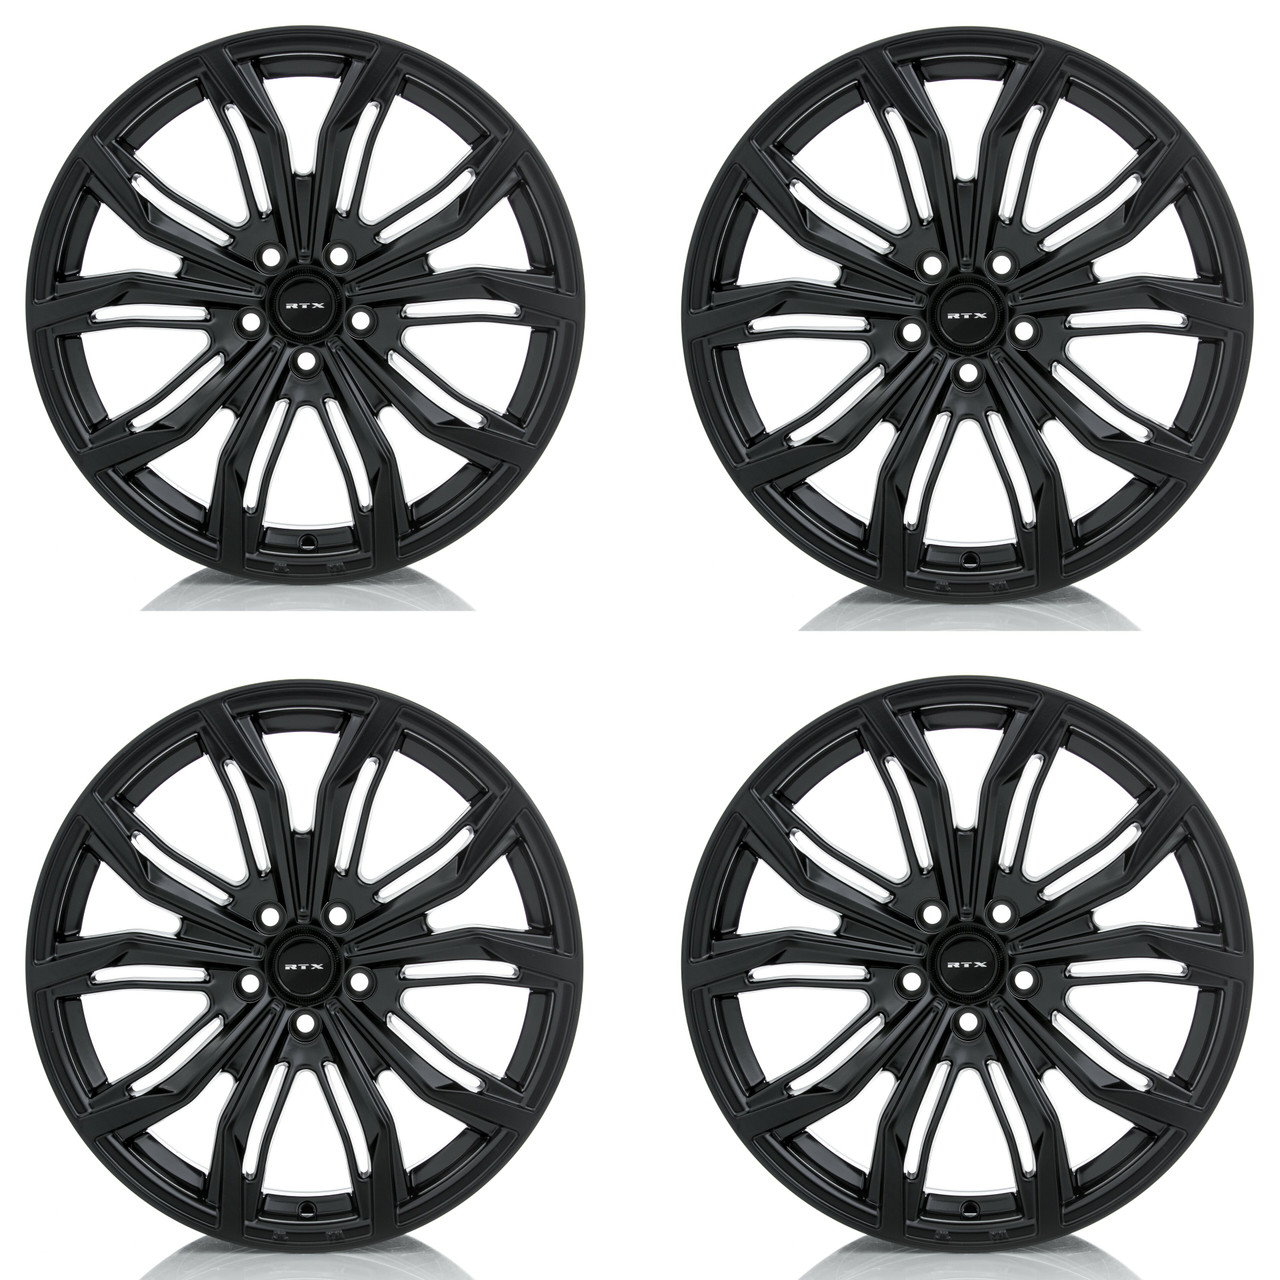 Set 4 20" RTX Black Widow Satin Black Wheels 20x9 5x108 38mm Rims